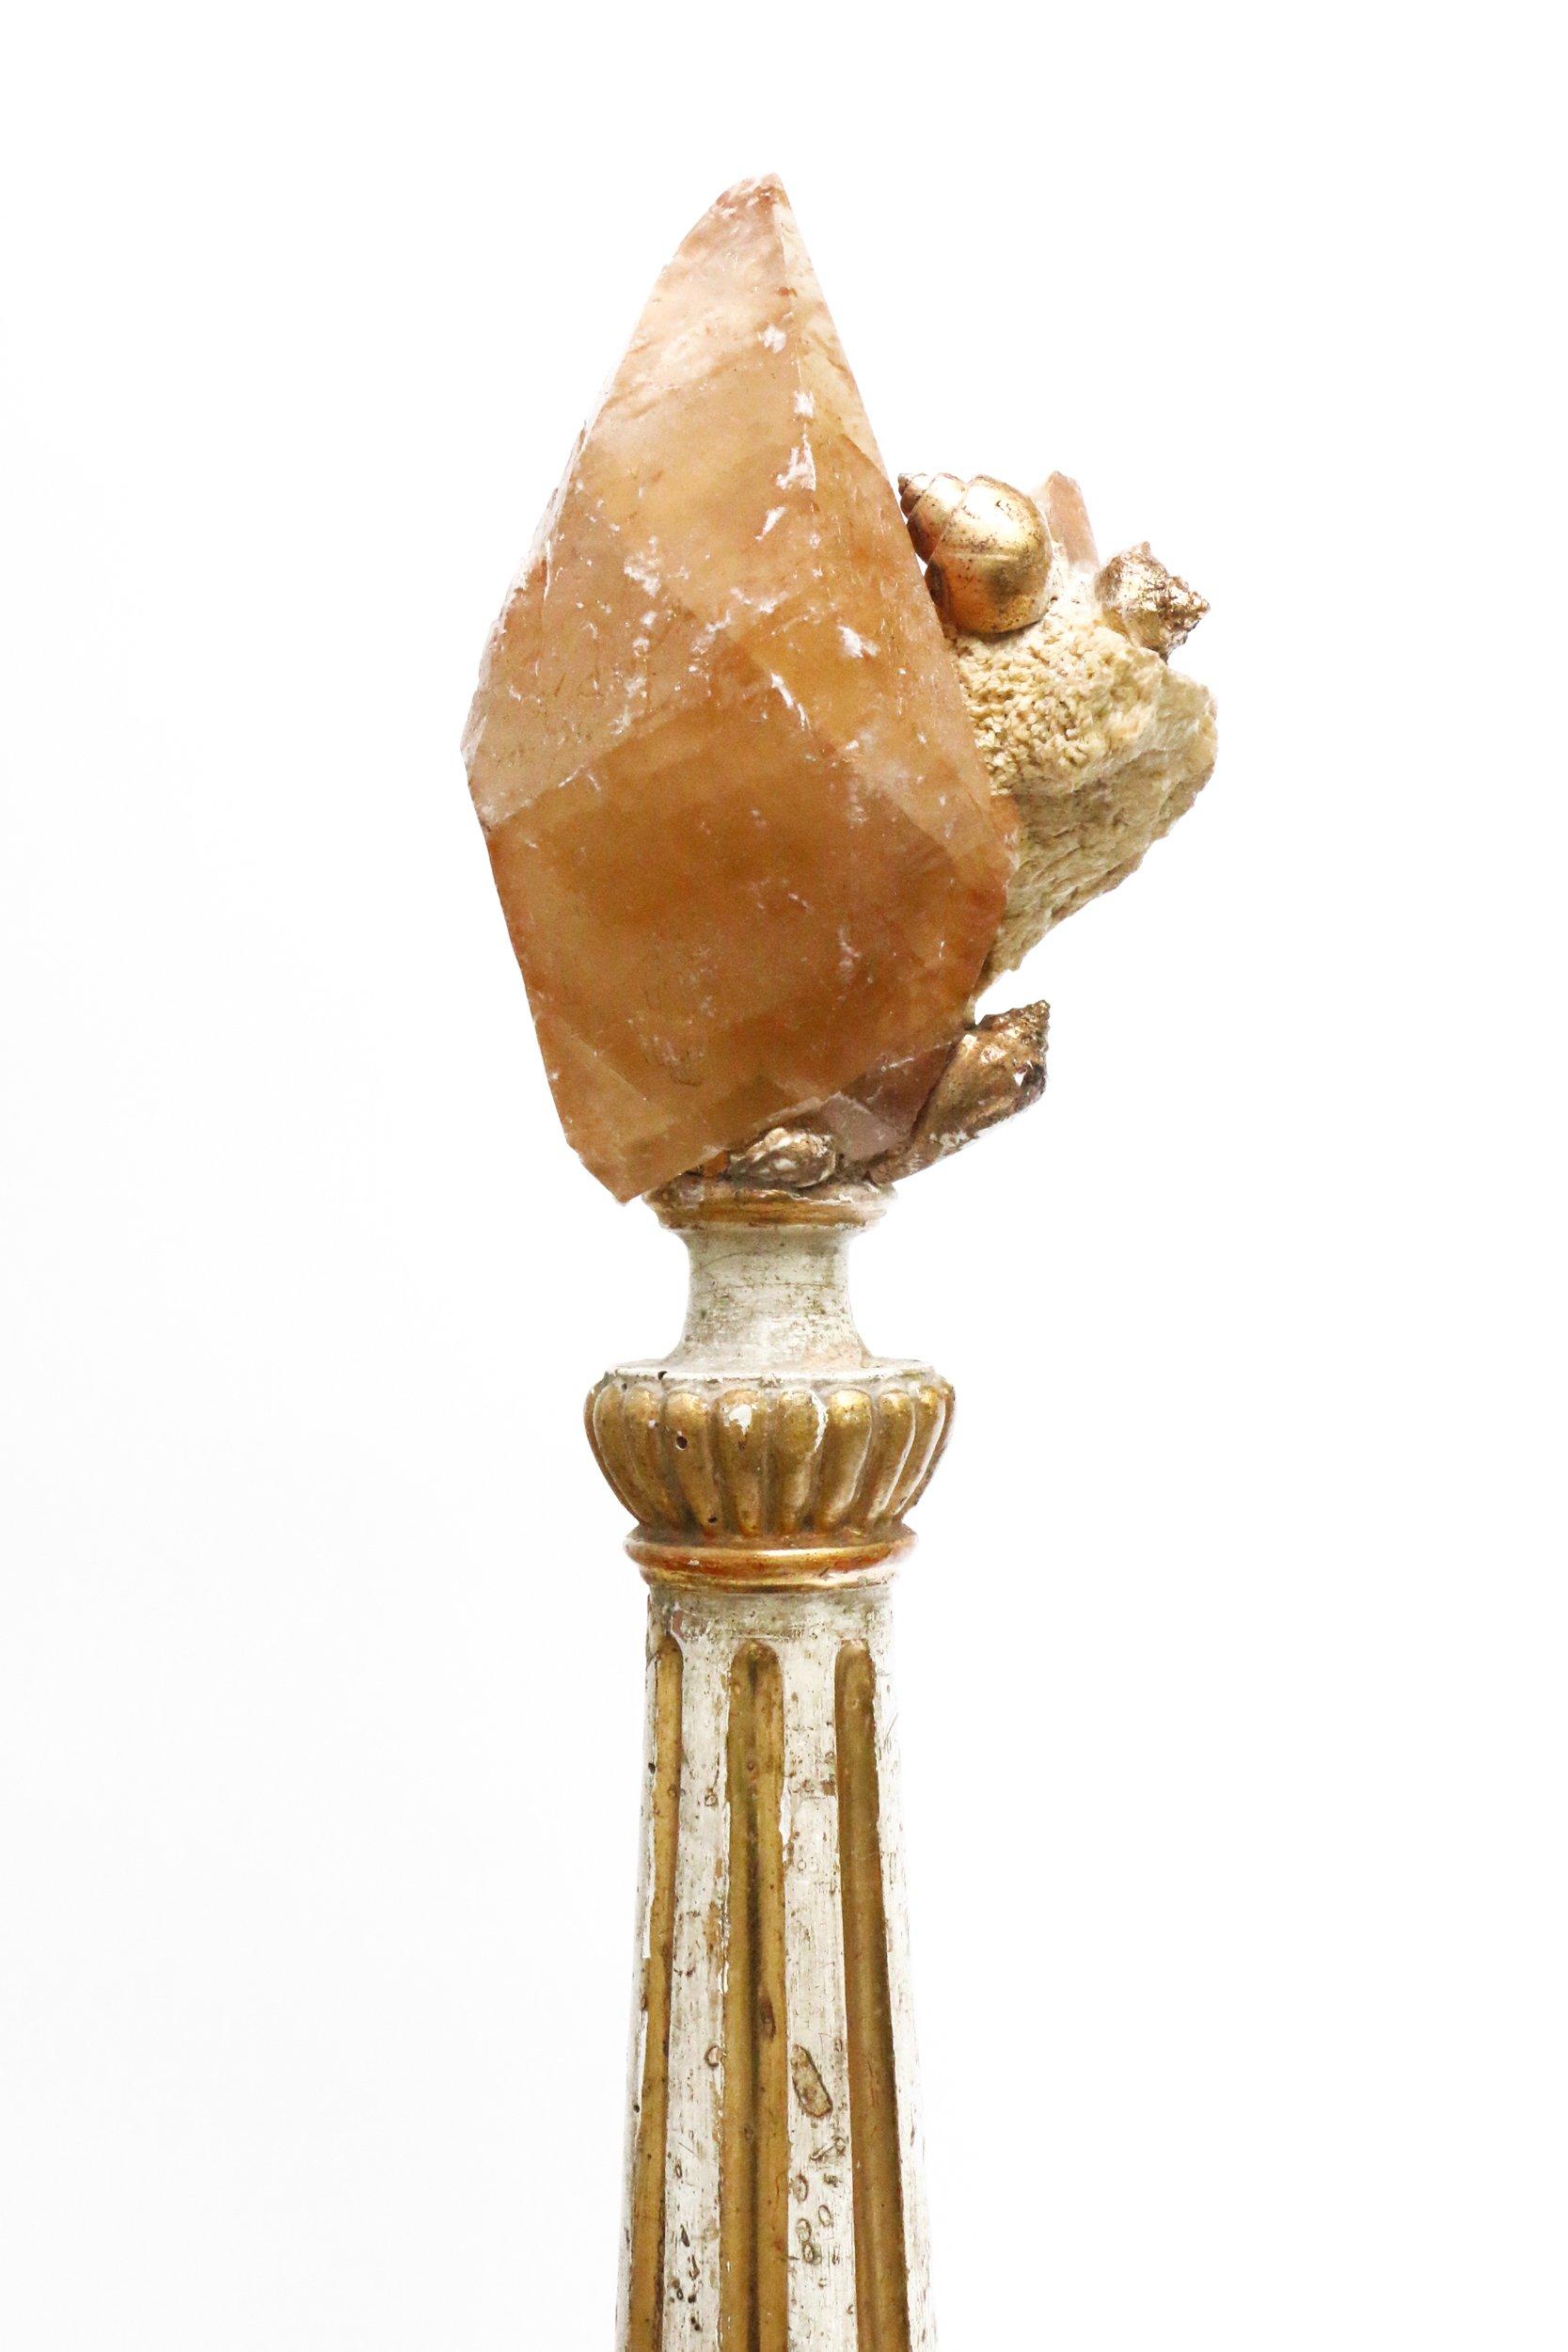 chandelier en bois italien (région de Ligurie) du XVIIIe siècle, décoré d'un cristal de calcite en matrice, un spécimen de la mine d'Elmwood, et de coquillages en feuille d'or. Cette mine produit certains des exemples les plus fins de cristaux de